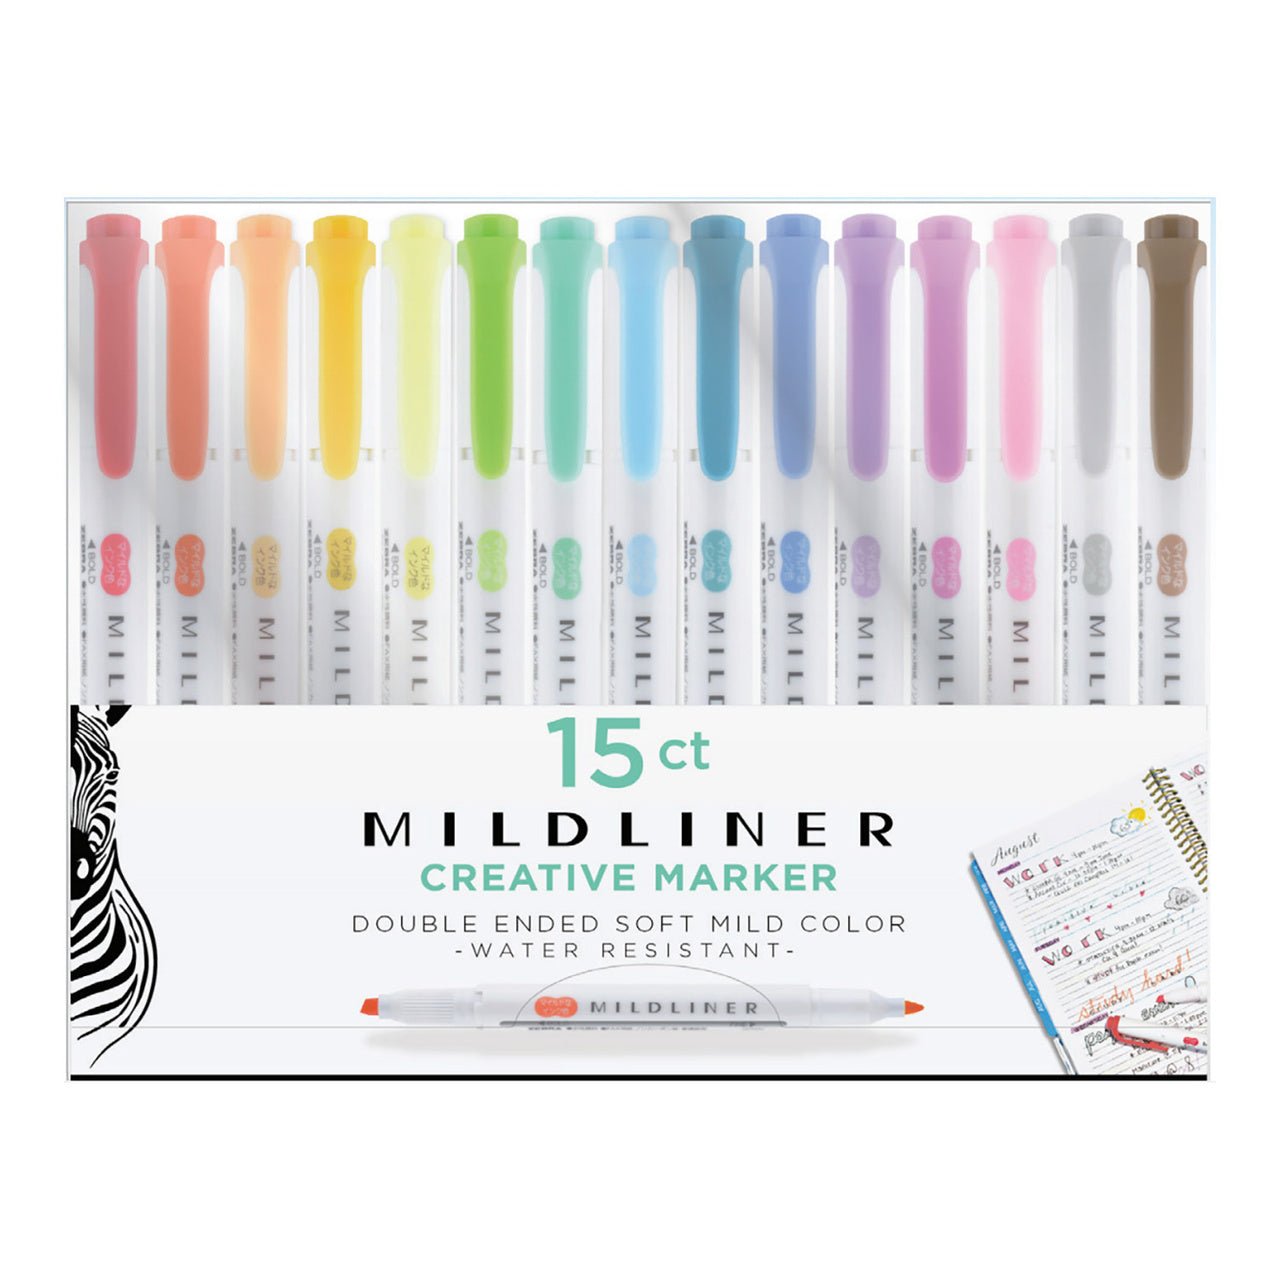 http://merriartist.com/cdn/shop/products/zebra-mildliner-creative-marker-15-color-set-301900.jpg?v=1671504876